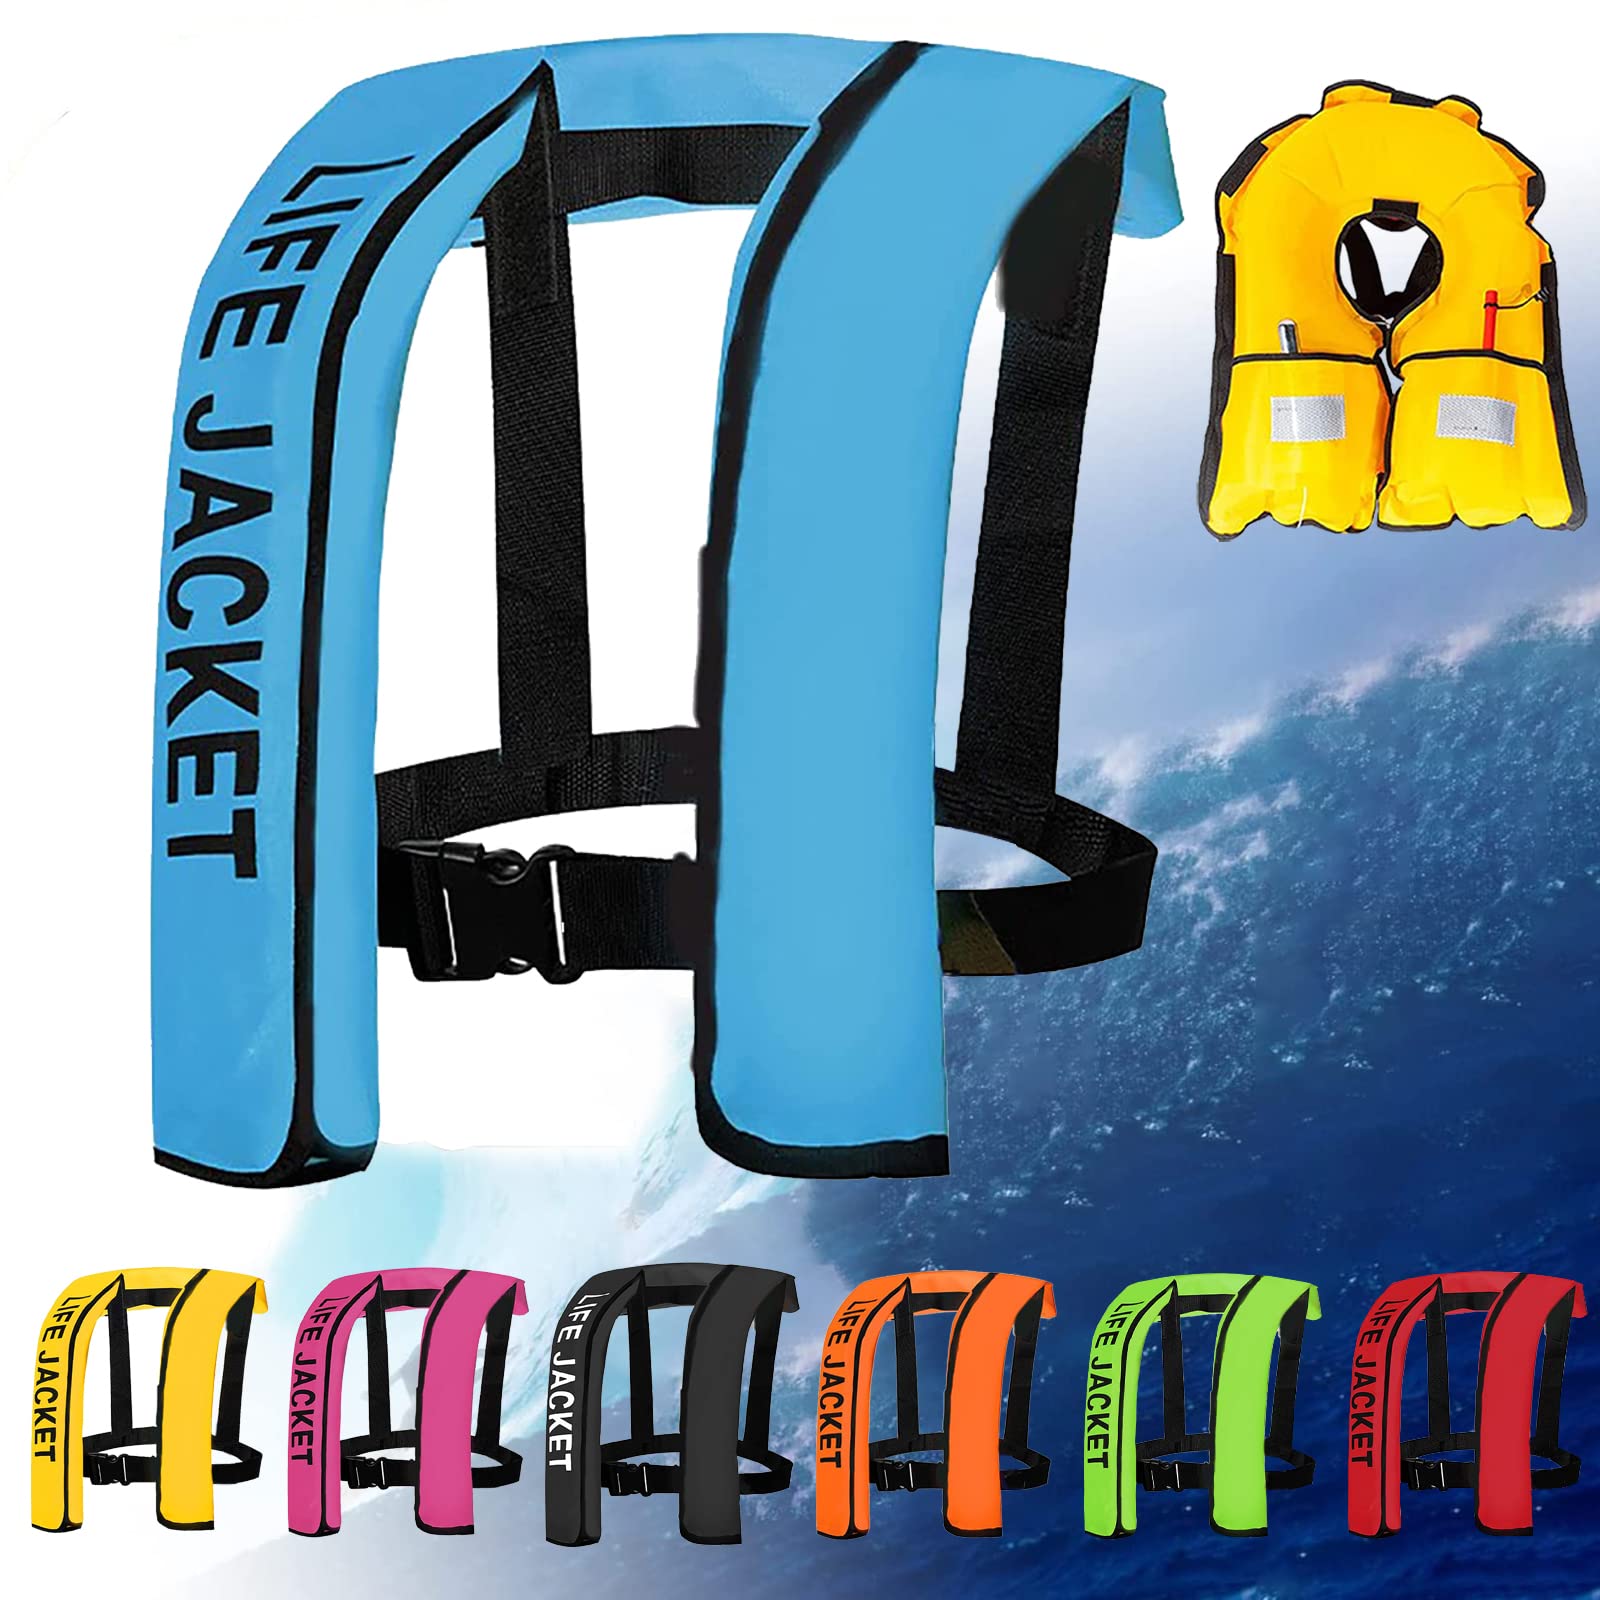 Verstellbare Aufblasbare Schwimmweste Für Erwachsene, Damen/Herren Schwimmhilfen Bequeme Schwimmweste Für Motorboot Bootfahren Kajakfahren Angeln Surfen Wassersport,One Size,Blue